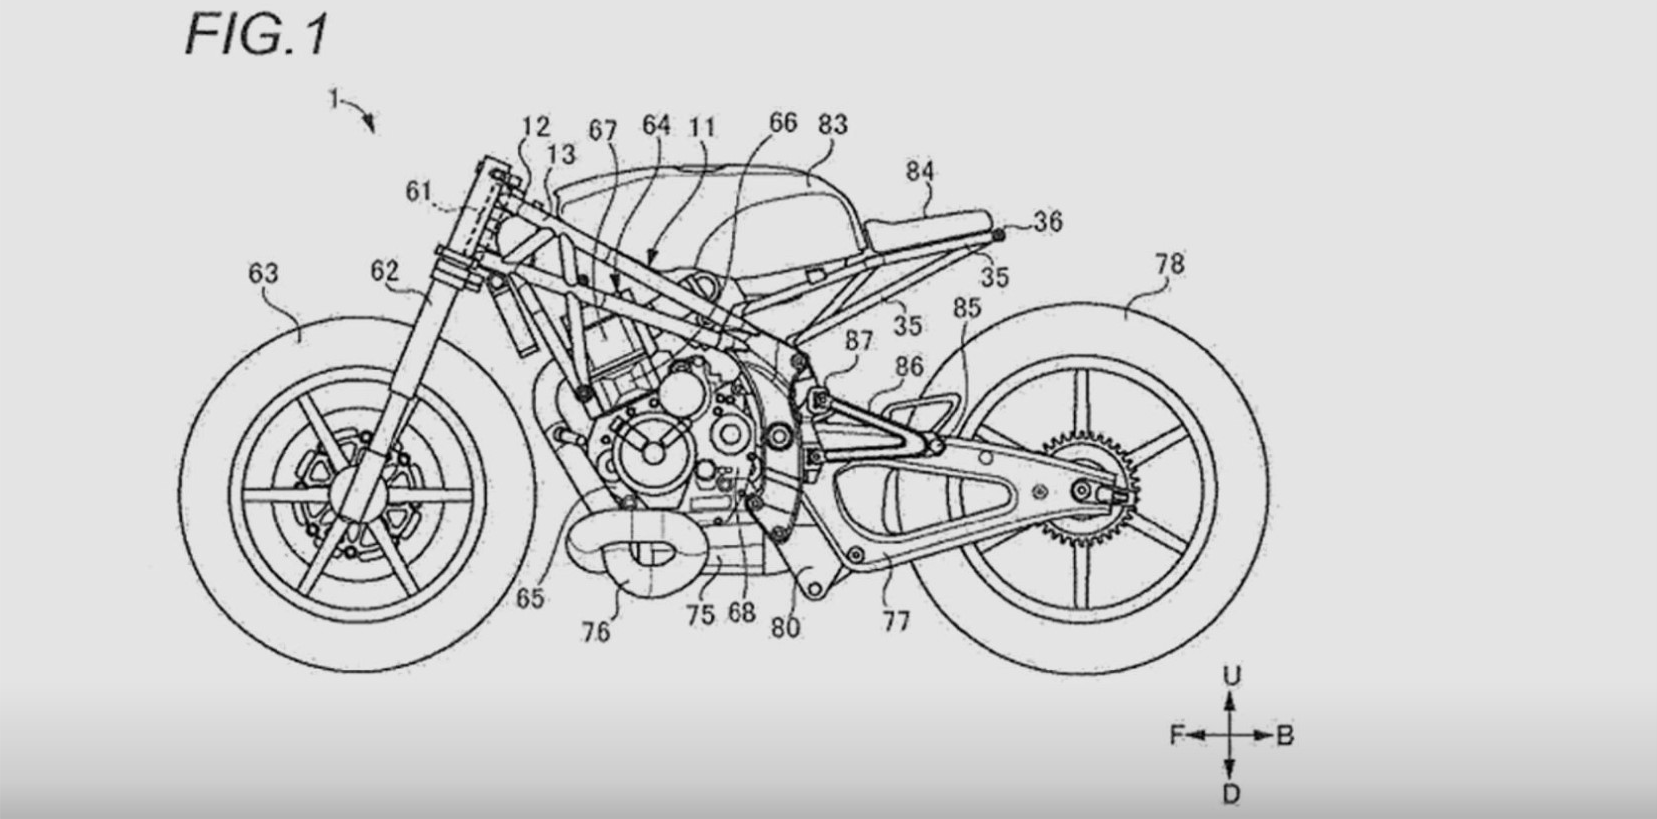 suzuki-patent-new-motorcycle-uae-dubai